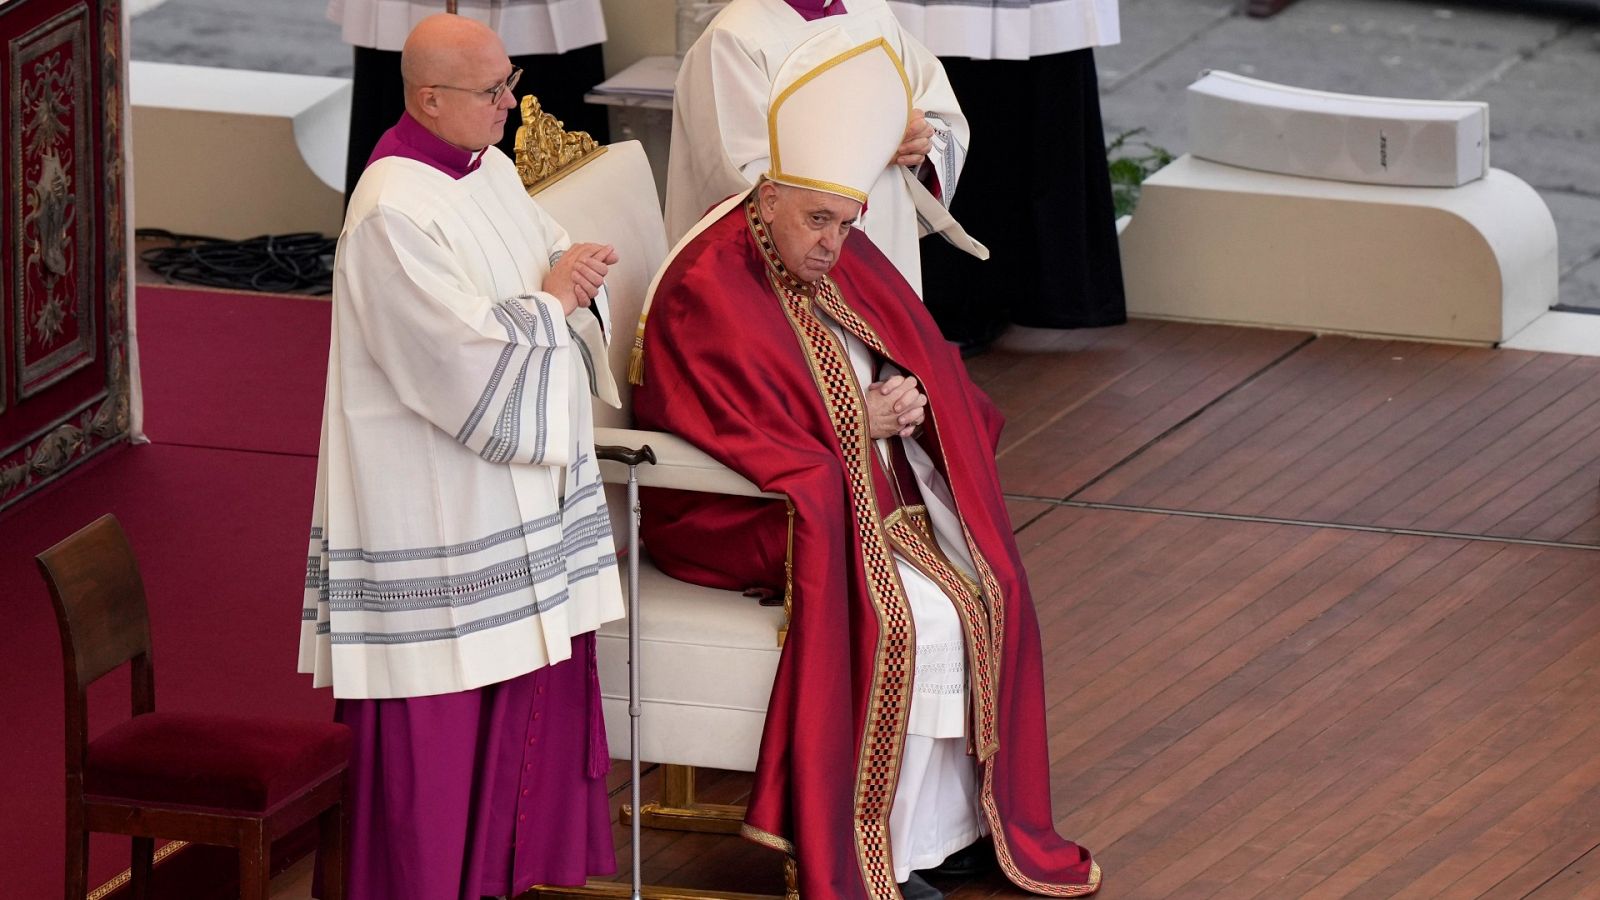 El papa Francisco despide a Benedicto XVI: "Padre, en tus manos encomendamos su espíritu"